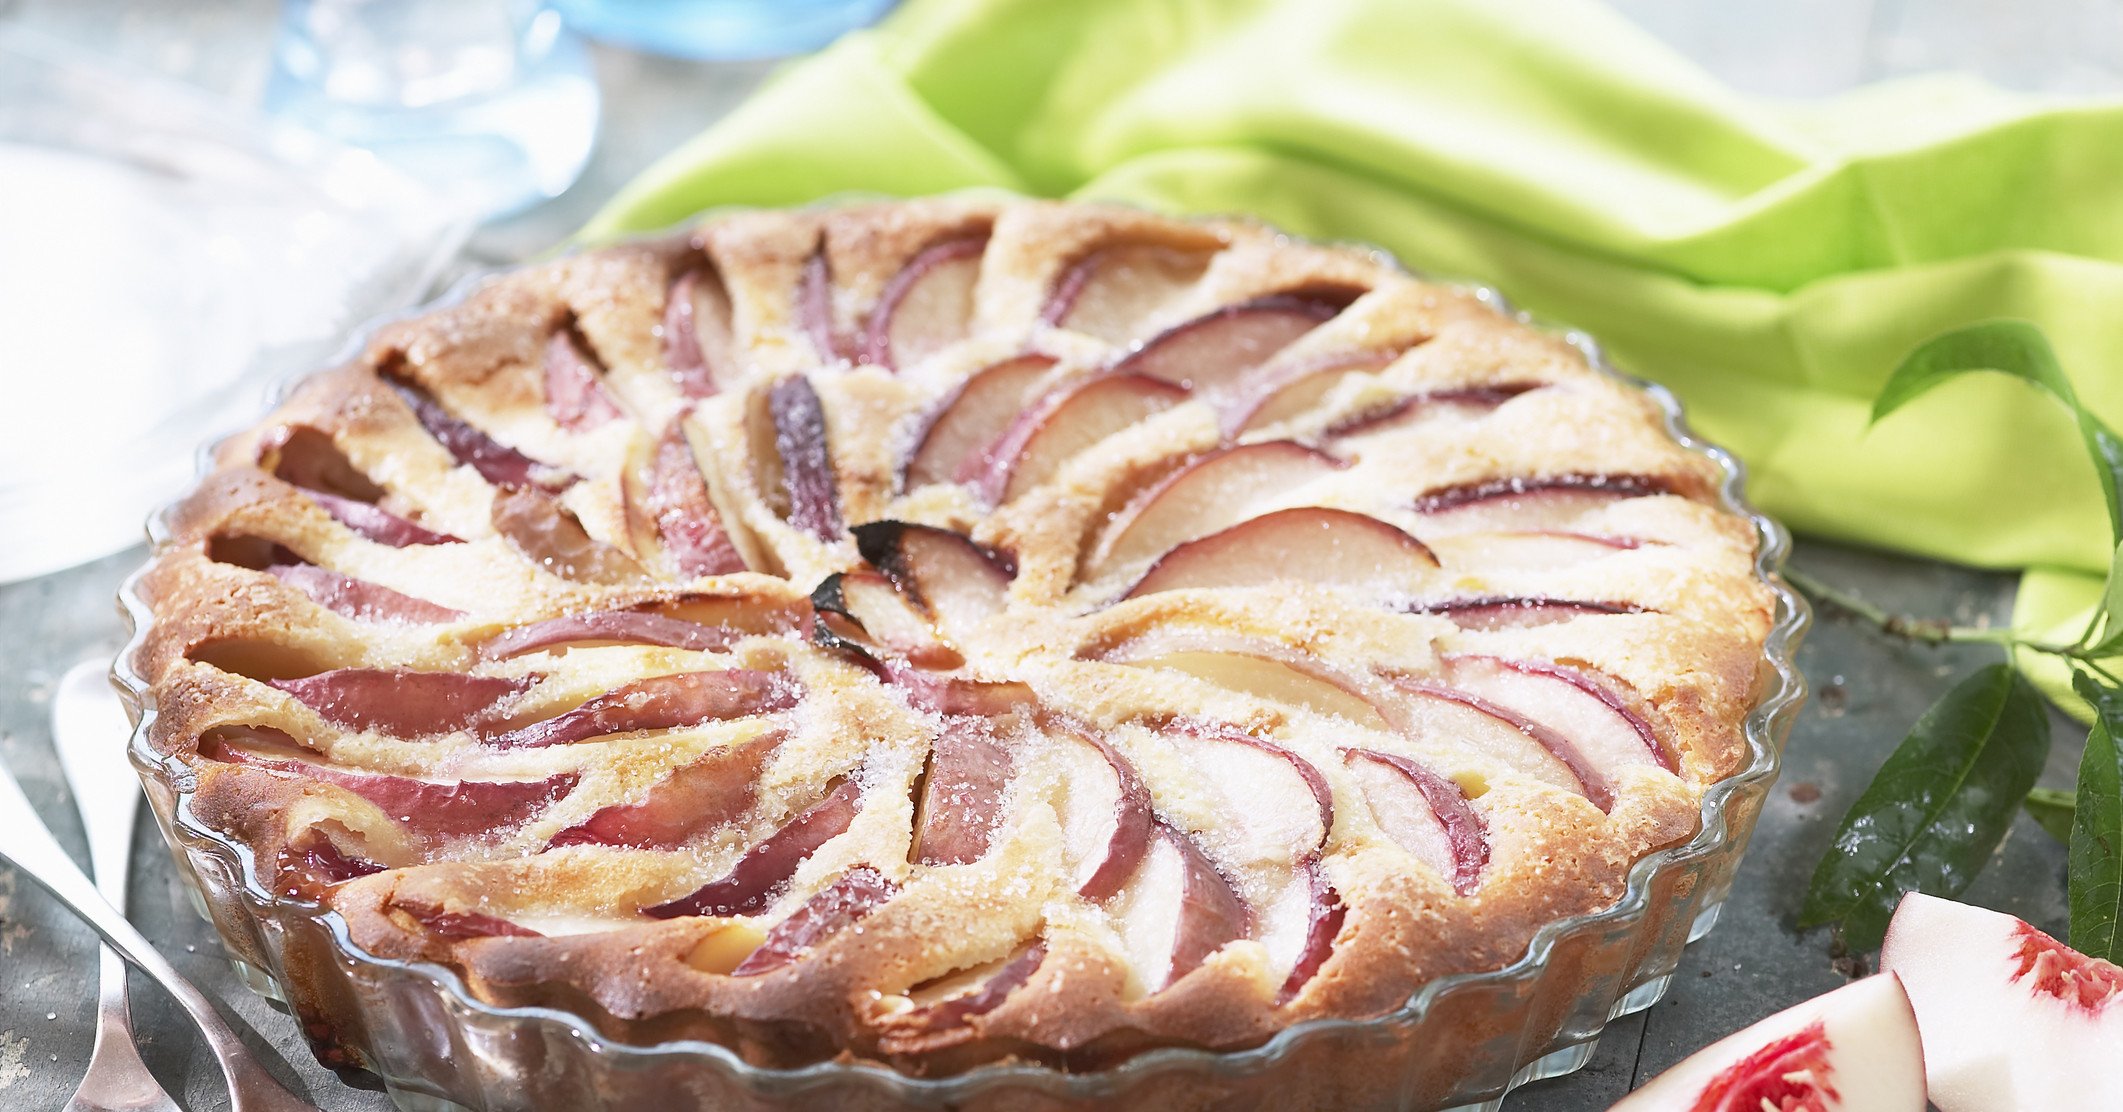 Блюда накрытые тестом. Пирог с персиками. Пирог с яблоками полузакрытый. Заливной пирог с персиками свежими. Цветаевский пирог с персиками.